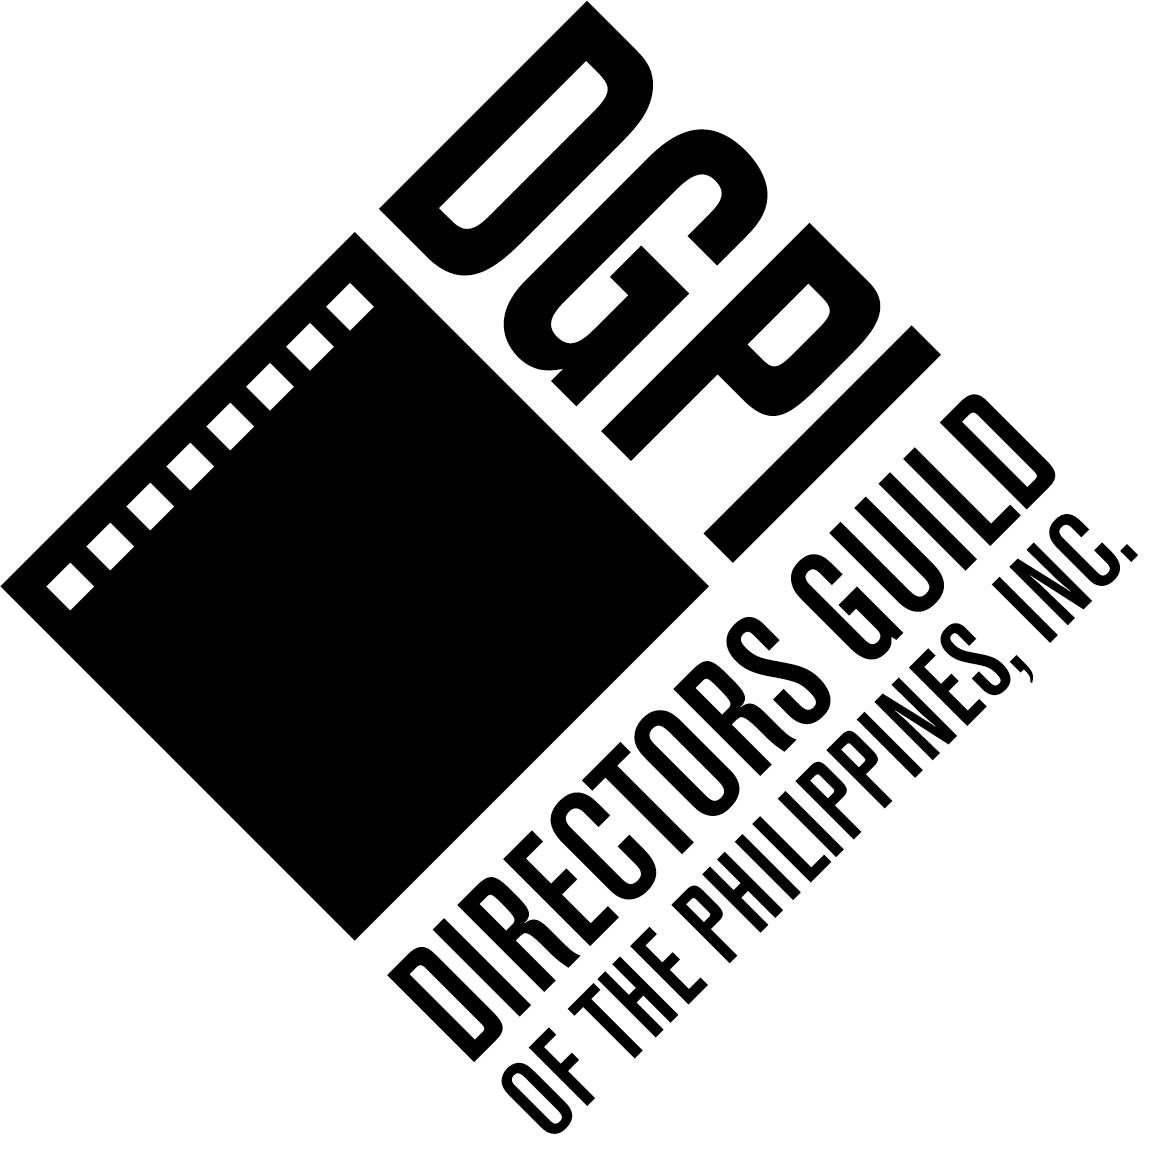 Filipino directors oppose MTRCB plan to regulate streaming platforms